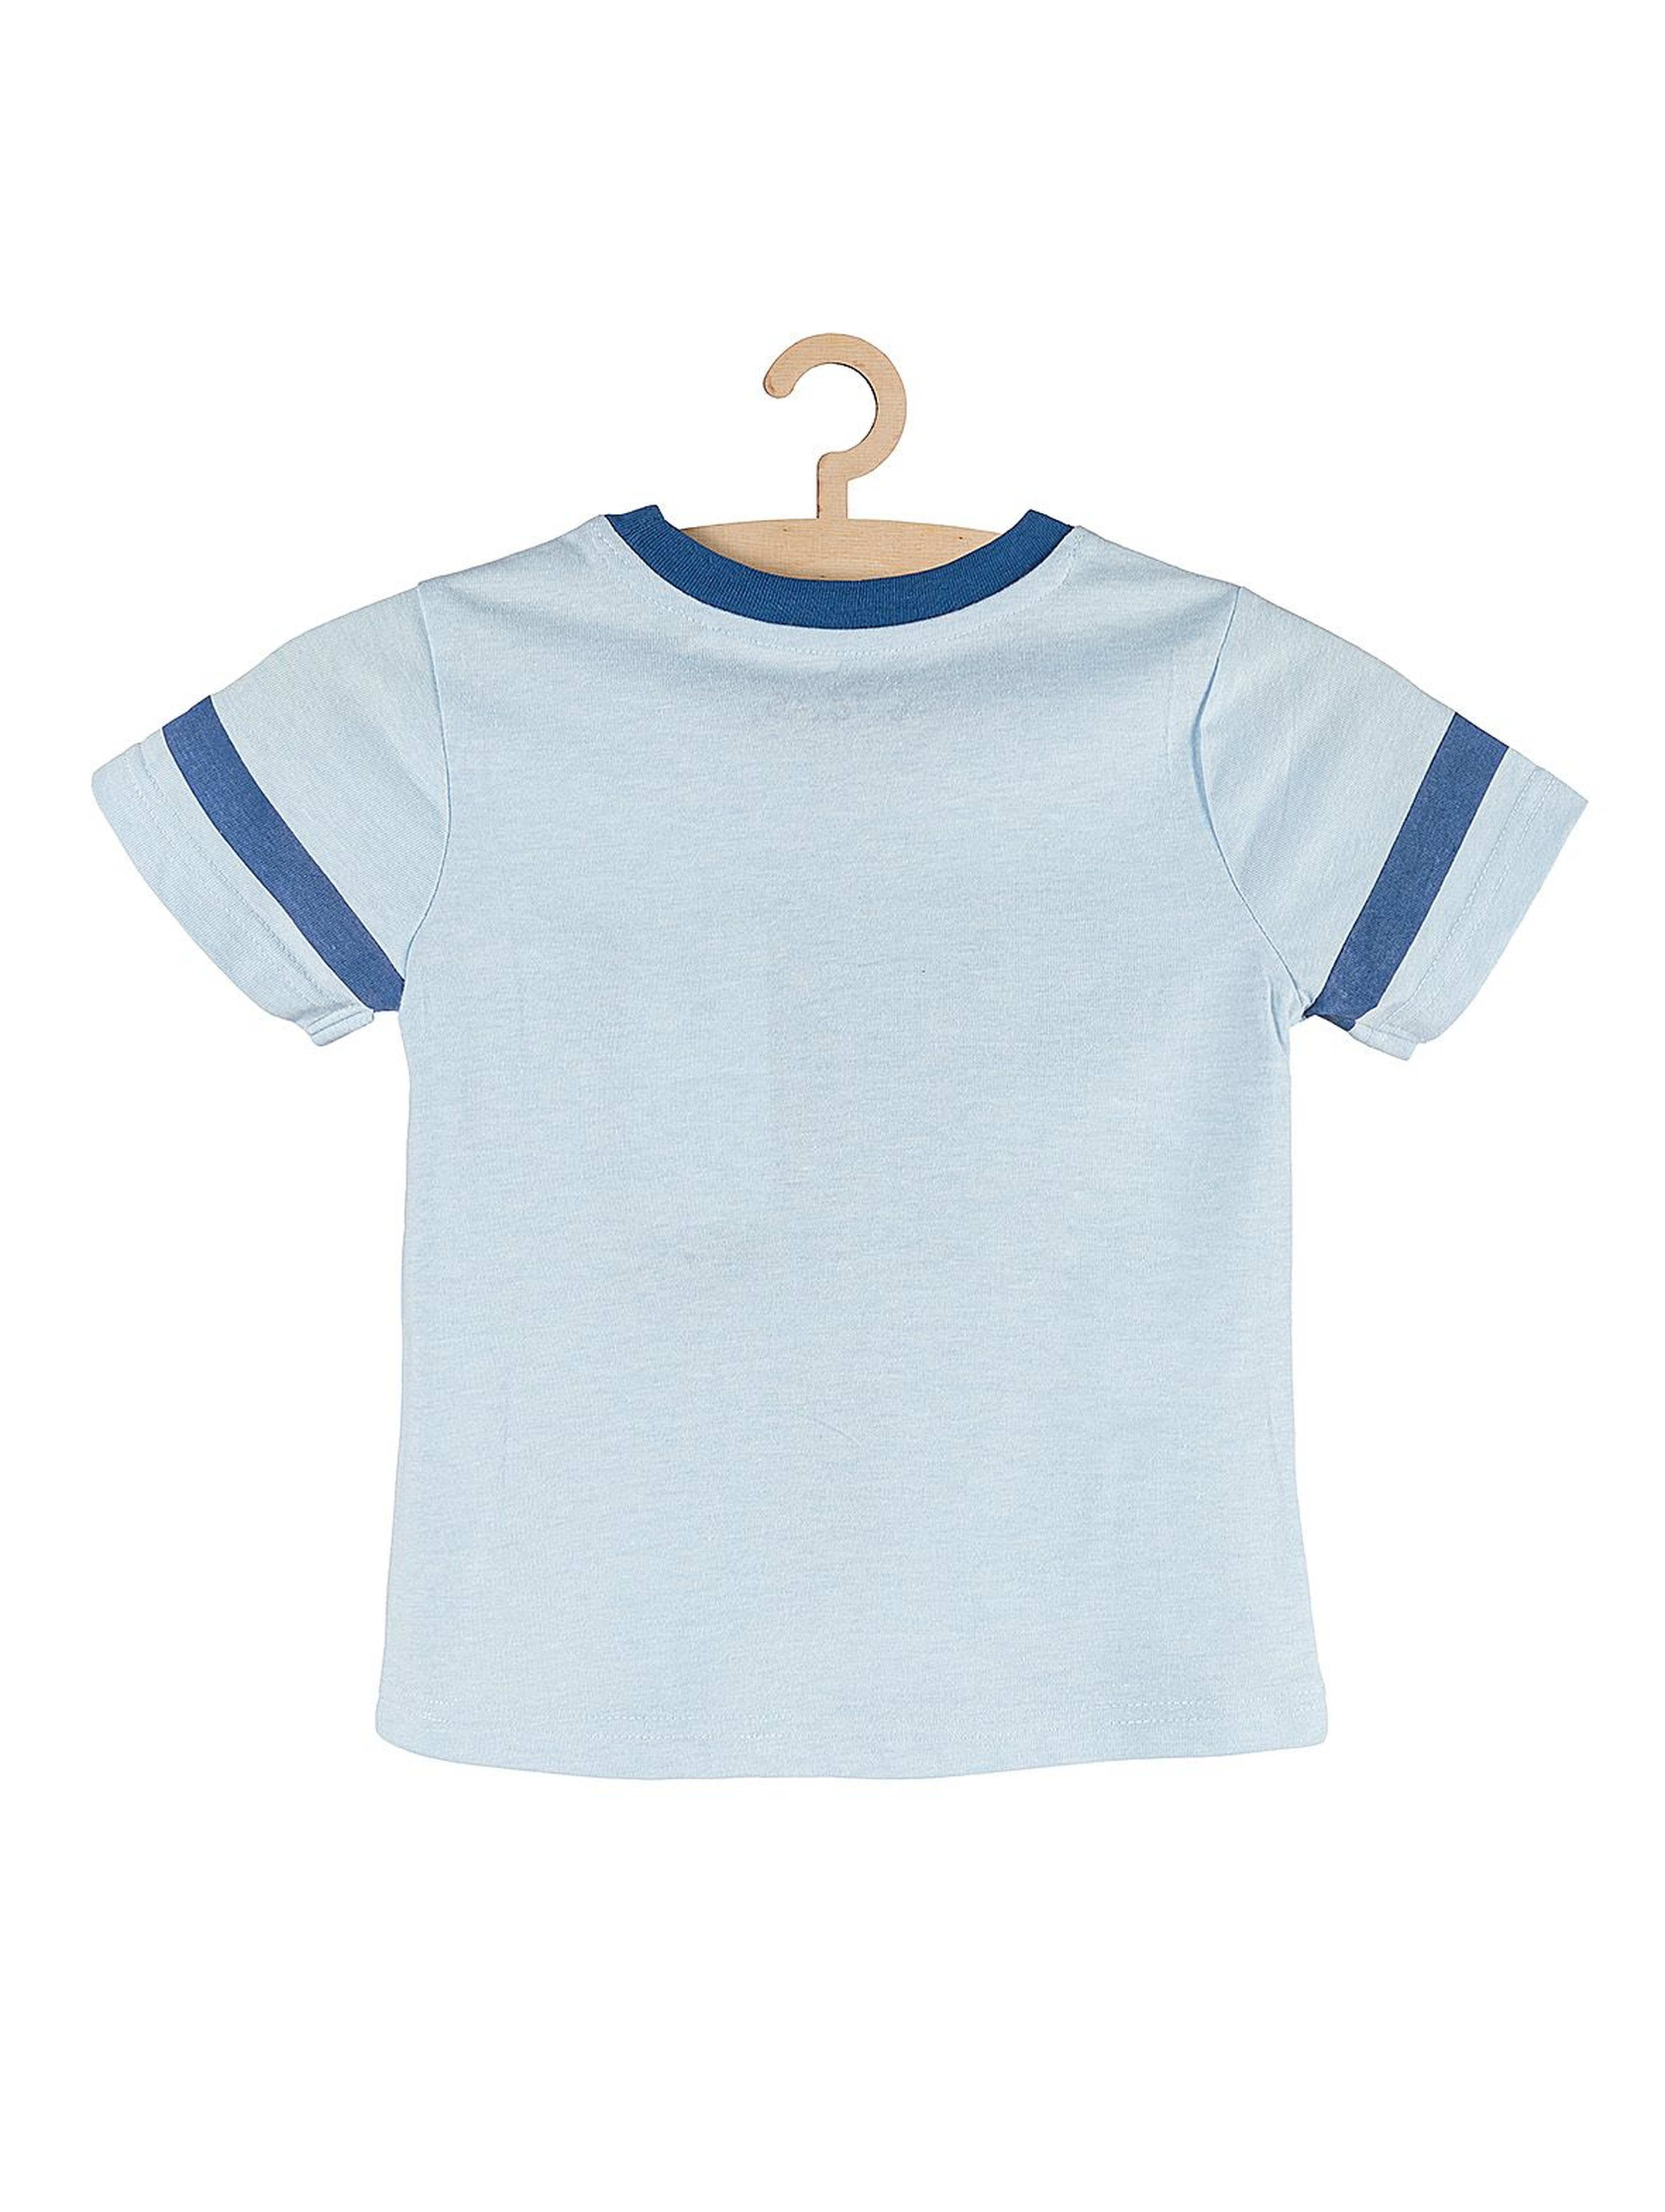 Koszulka chłopięca niebieska z modnymi nadrukami